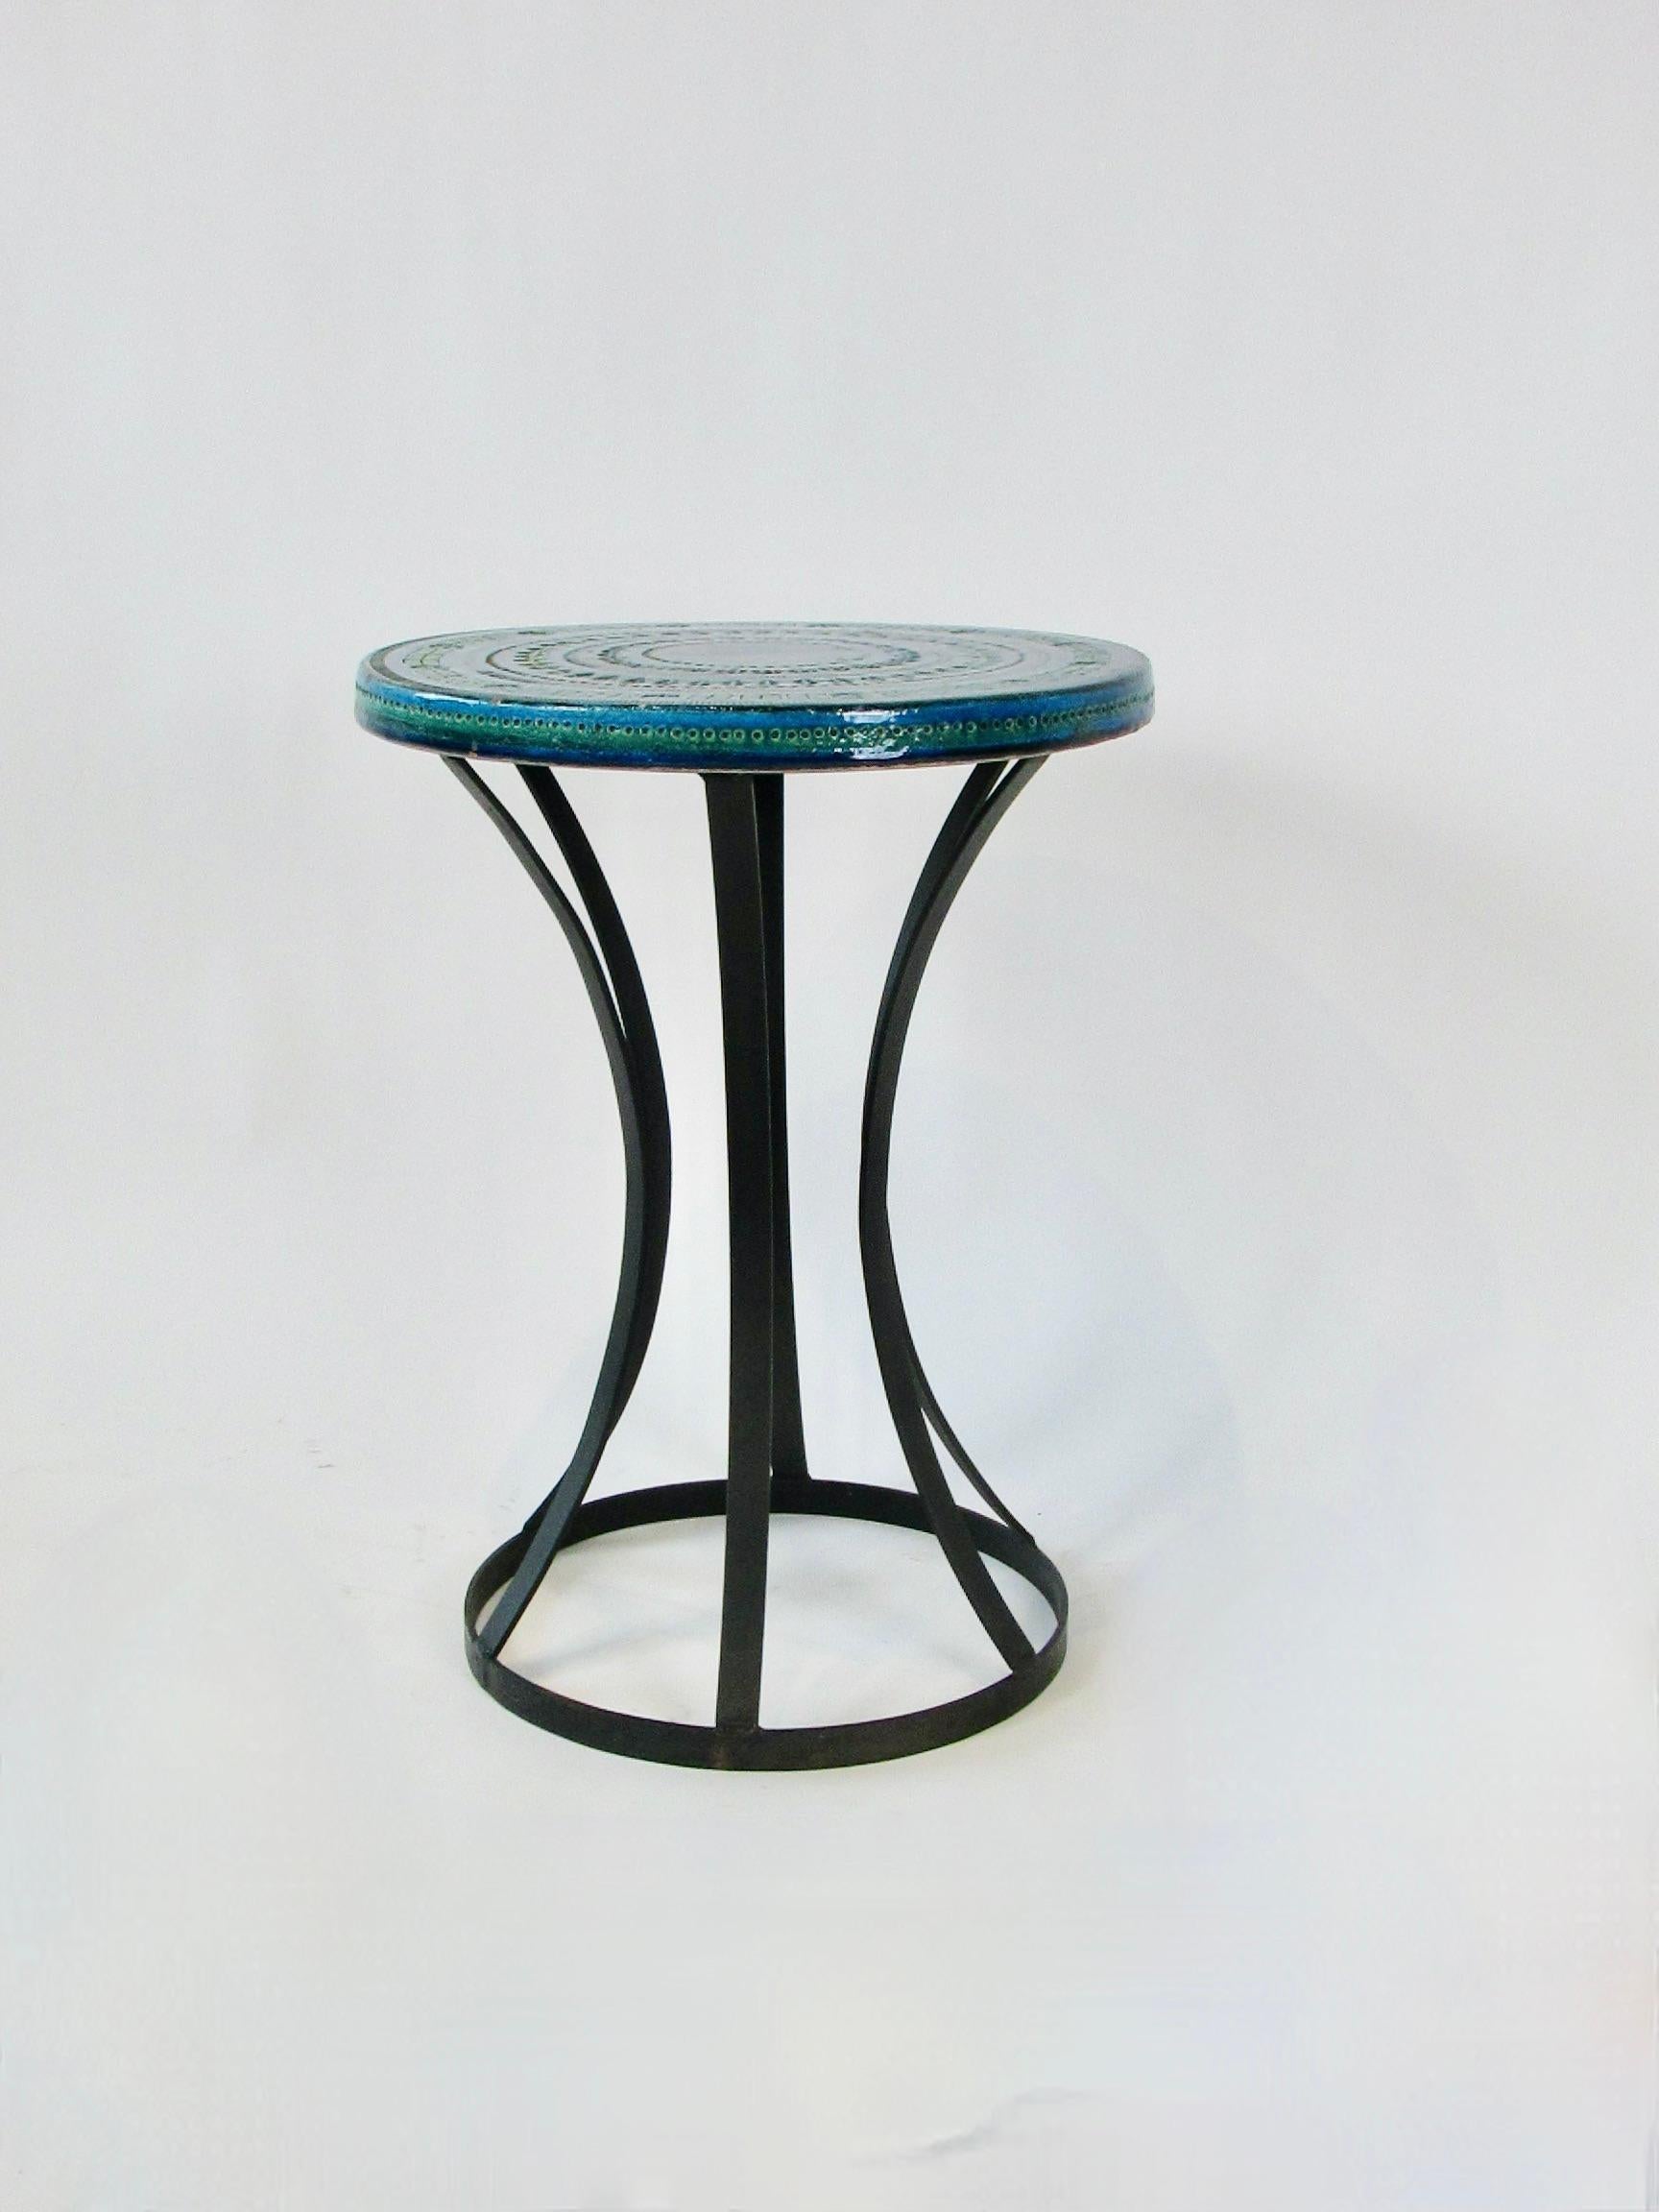 Magnifique mélange de couleurs bleues et vertes cuit sur Aldo Londi  Design/One  table en poterie. Le motif est incisé dans le plateau de la table.  Le plateau repose sur une base en fer forgé en forme de sablier. Importé d'Italie par Raymor co. 